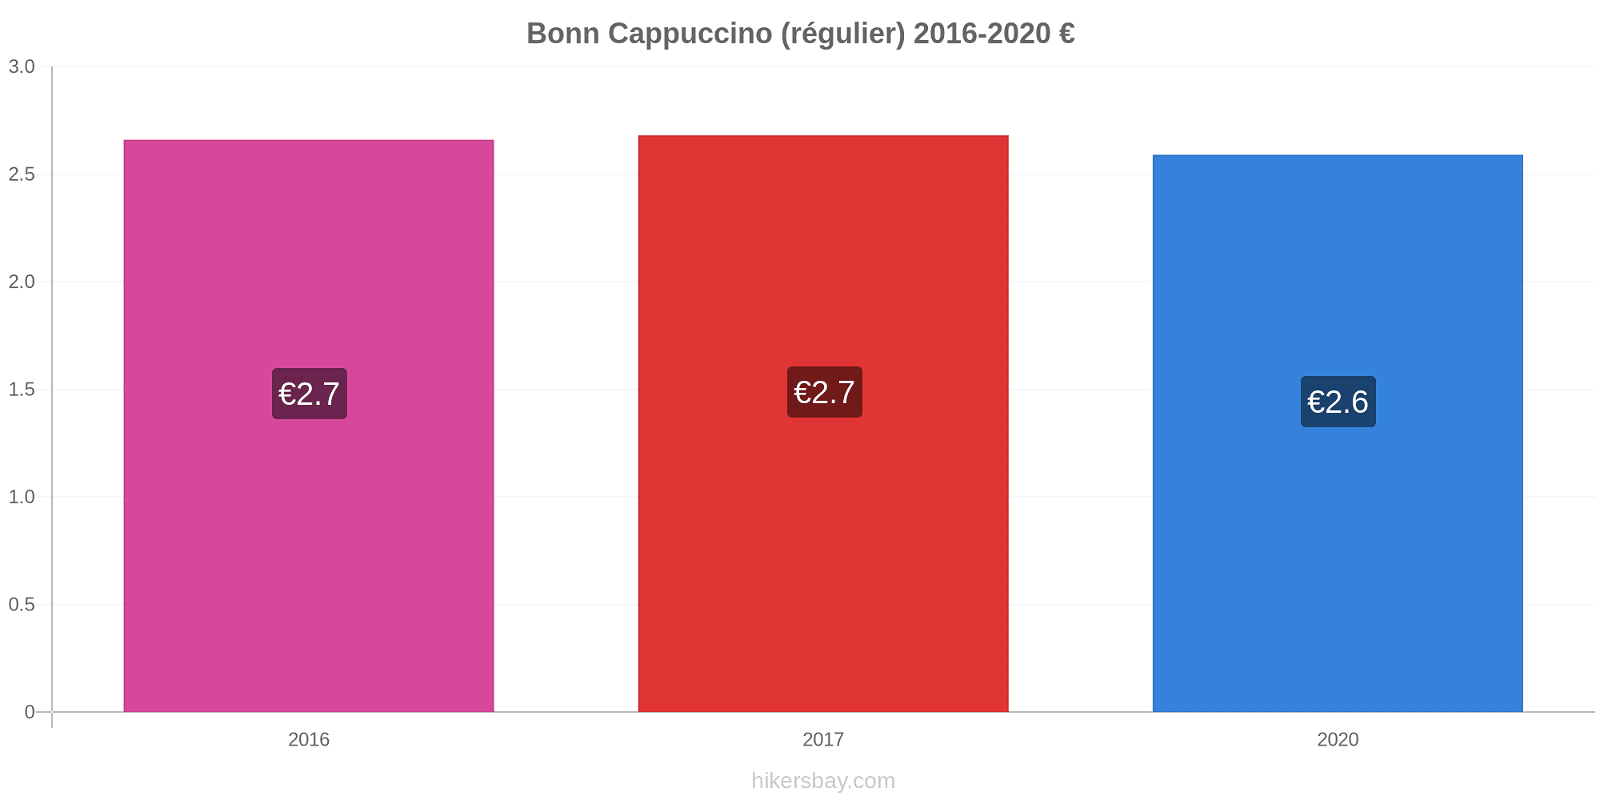 Bonn changements de prix Cappuccino (régulier) hikersbay.com